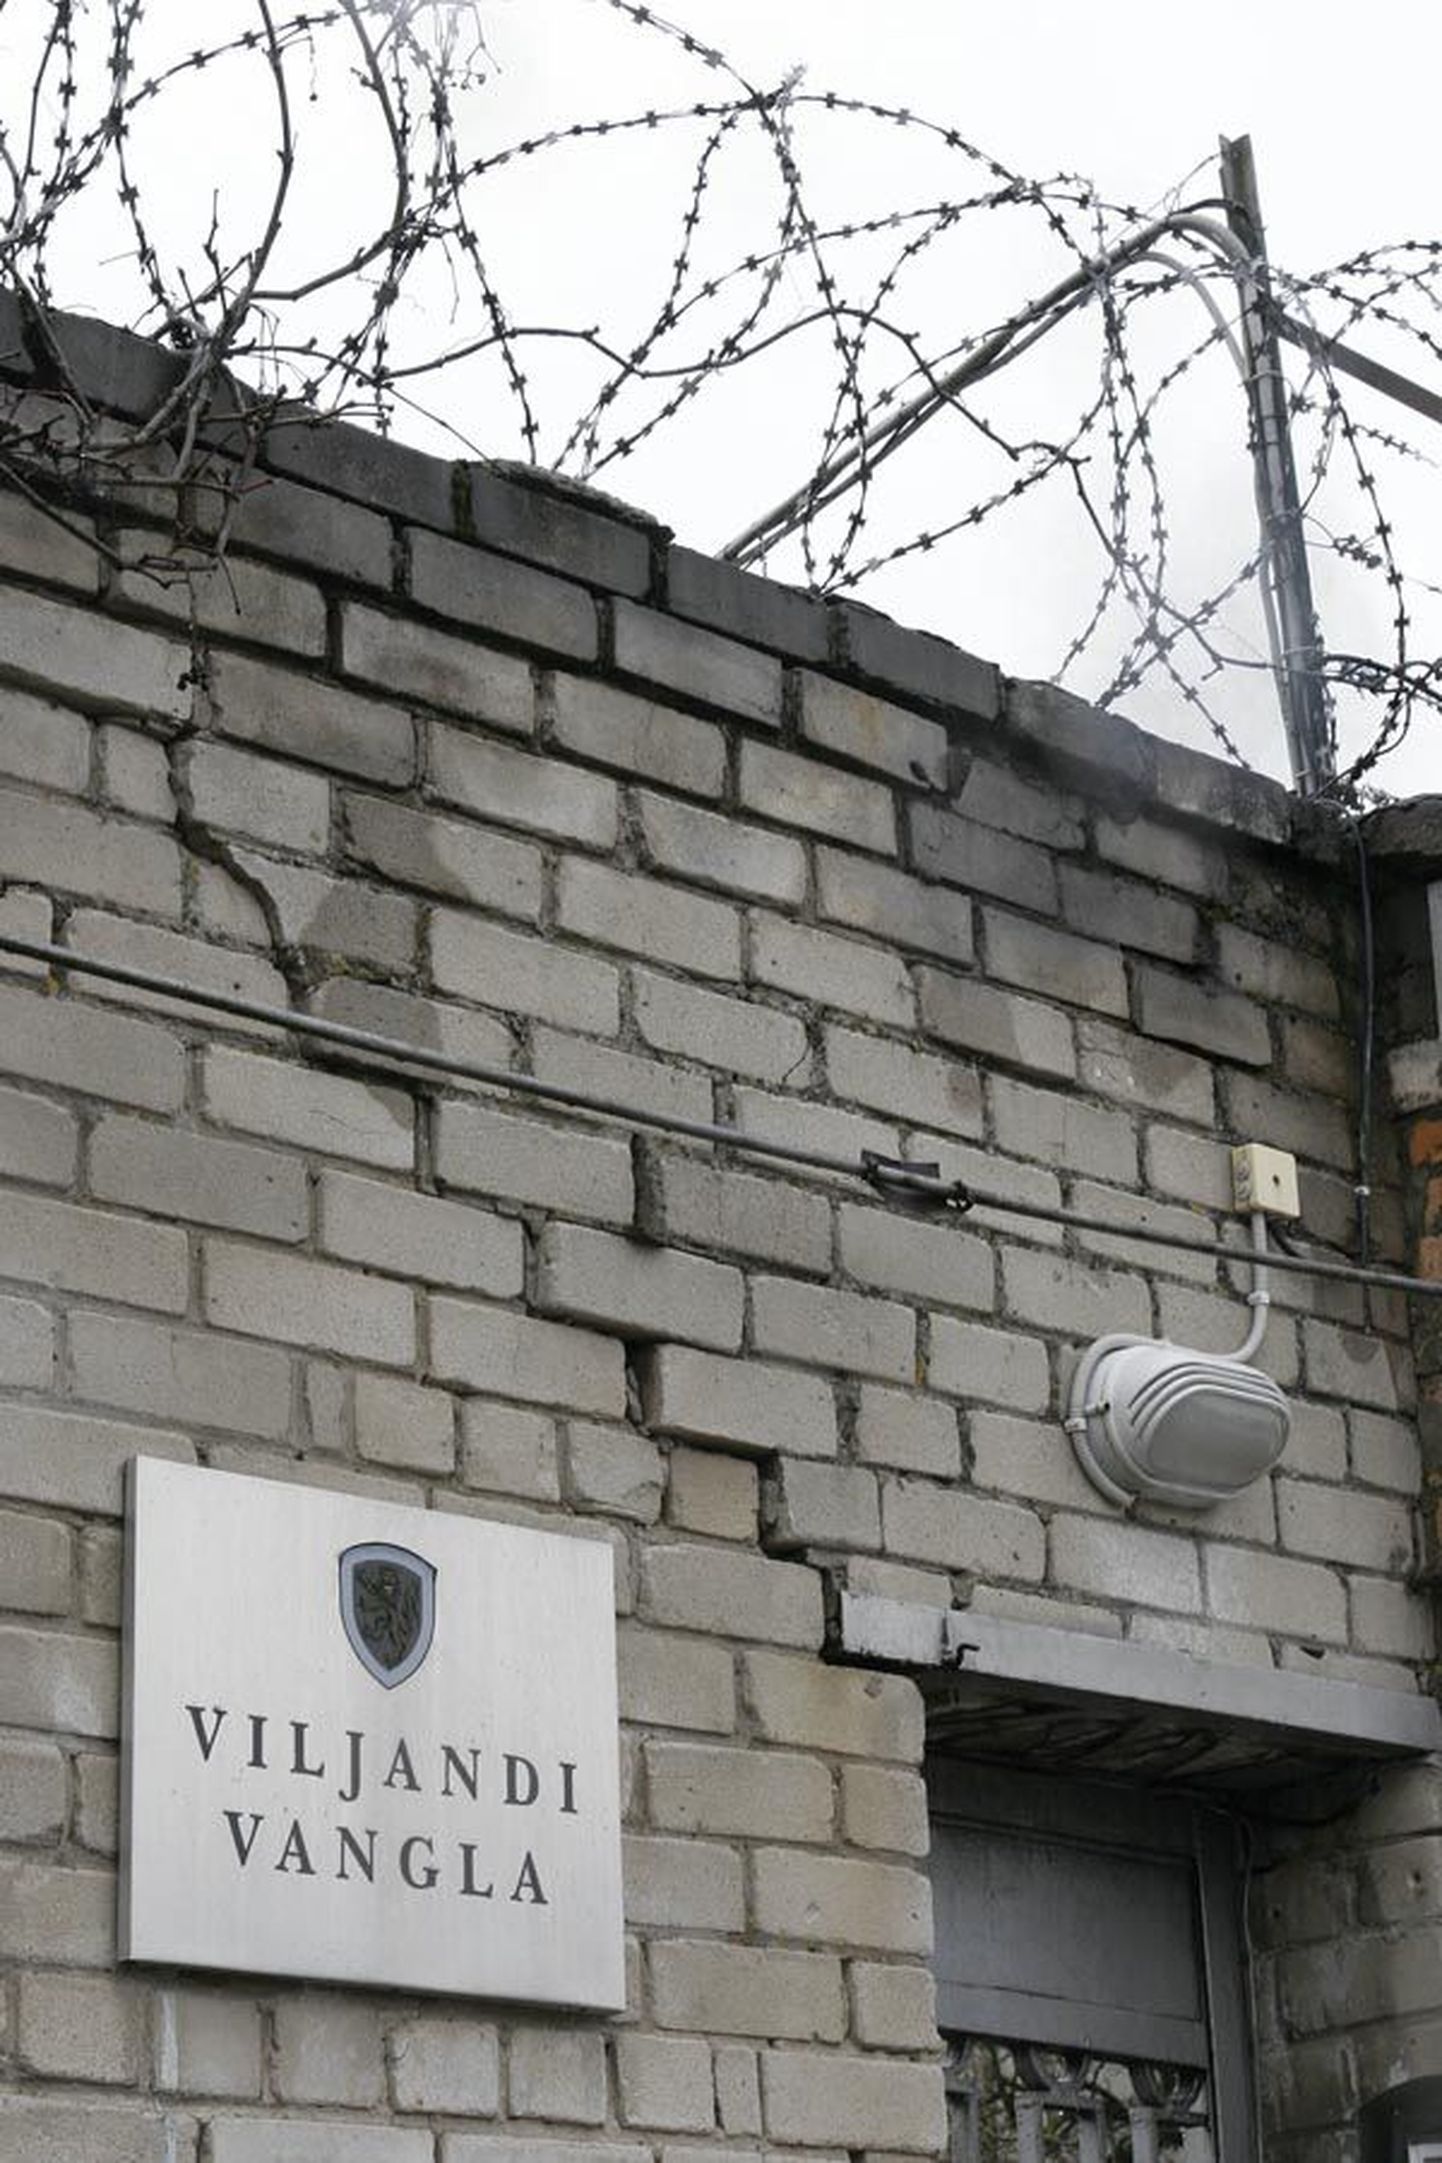 Lagunevates Viljandi vangla hoonetes kannab praegu karistust veel 32 vangi. Maist alates pole vanglast väljamurdmist enam karta ning hoonete omanikul tuleb tagada, et keegi sinna sisse ei tungiks.